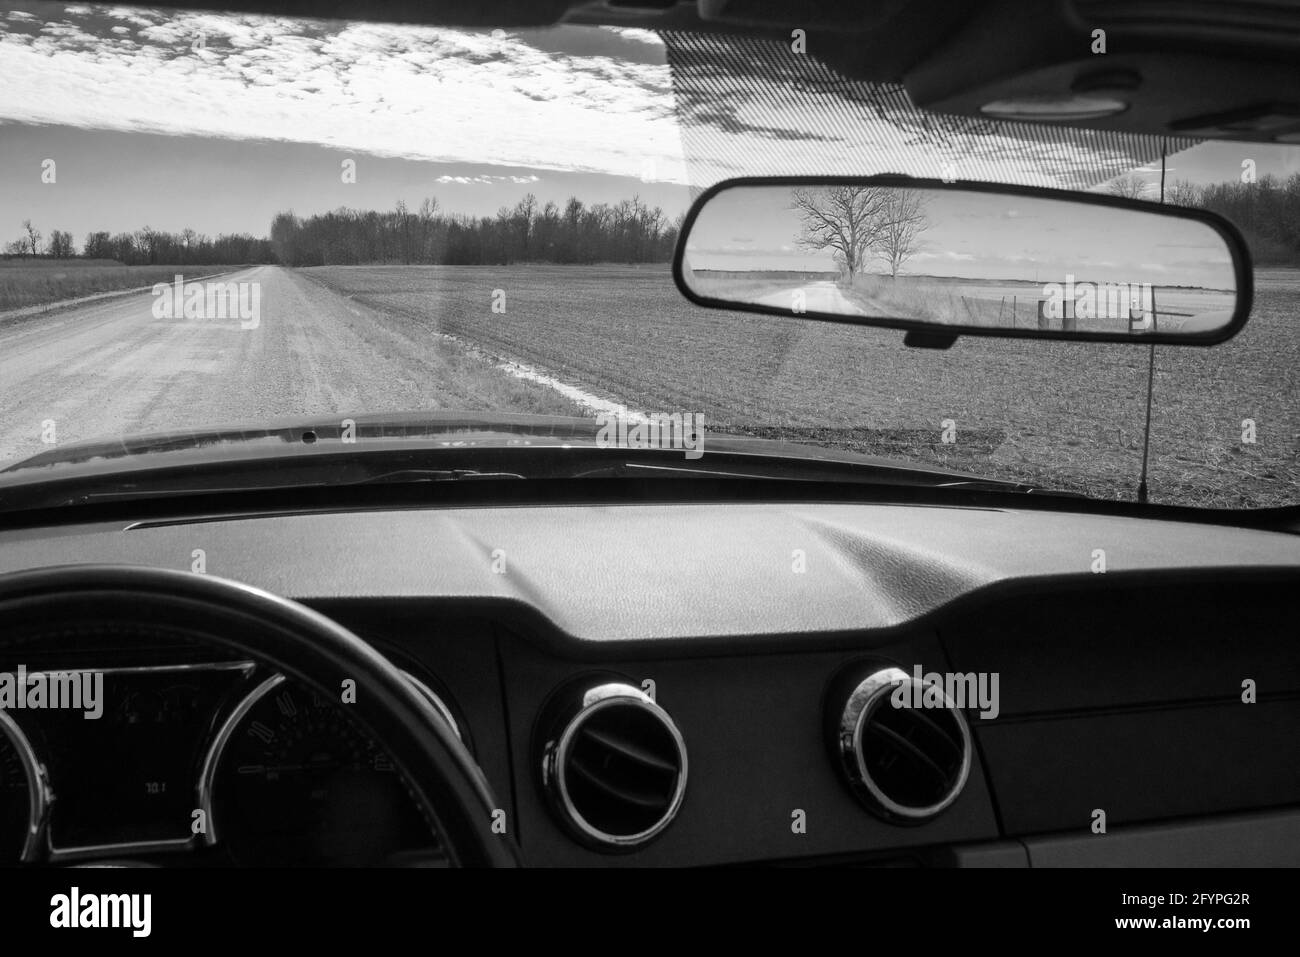 Le 24 février 2021, une route en terre dans le comté rural de Lincoln, Missouri, aux États-Unis, est visible à travers le pare-brise et dans le rétroviseur intérieur d'une voiture. Banque D'Images